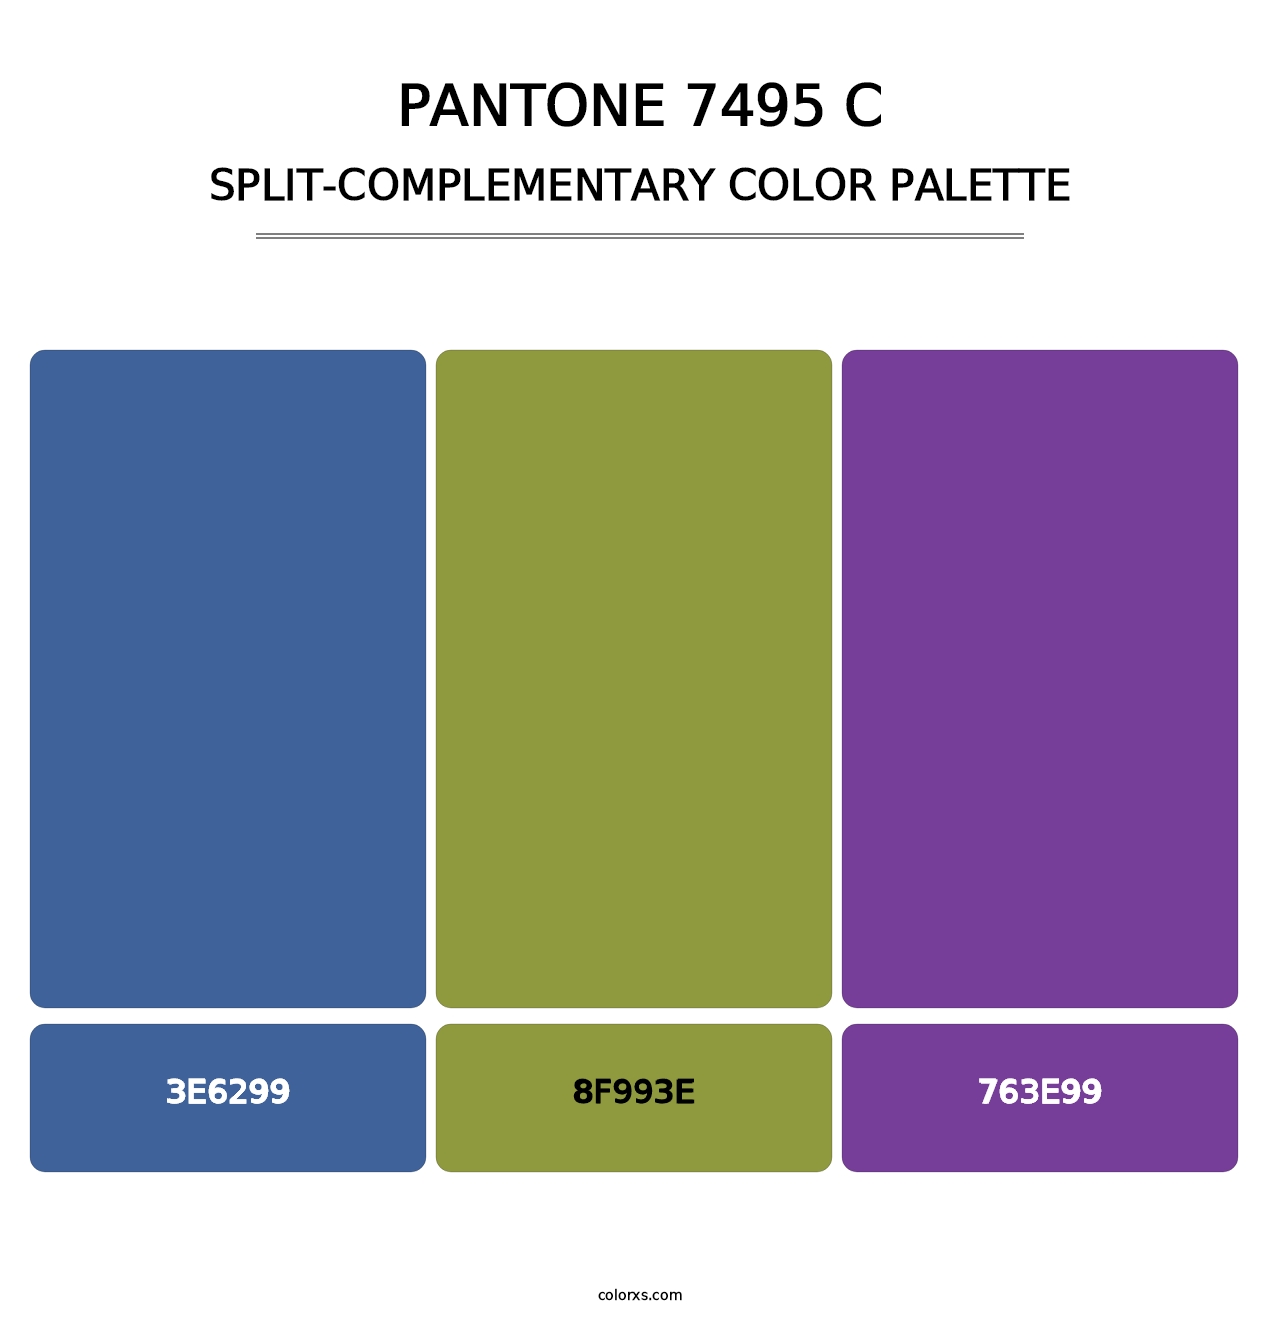 PANTONE 7495 C - Split-Complementary Color Palette